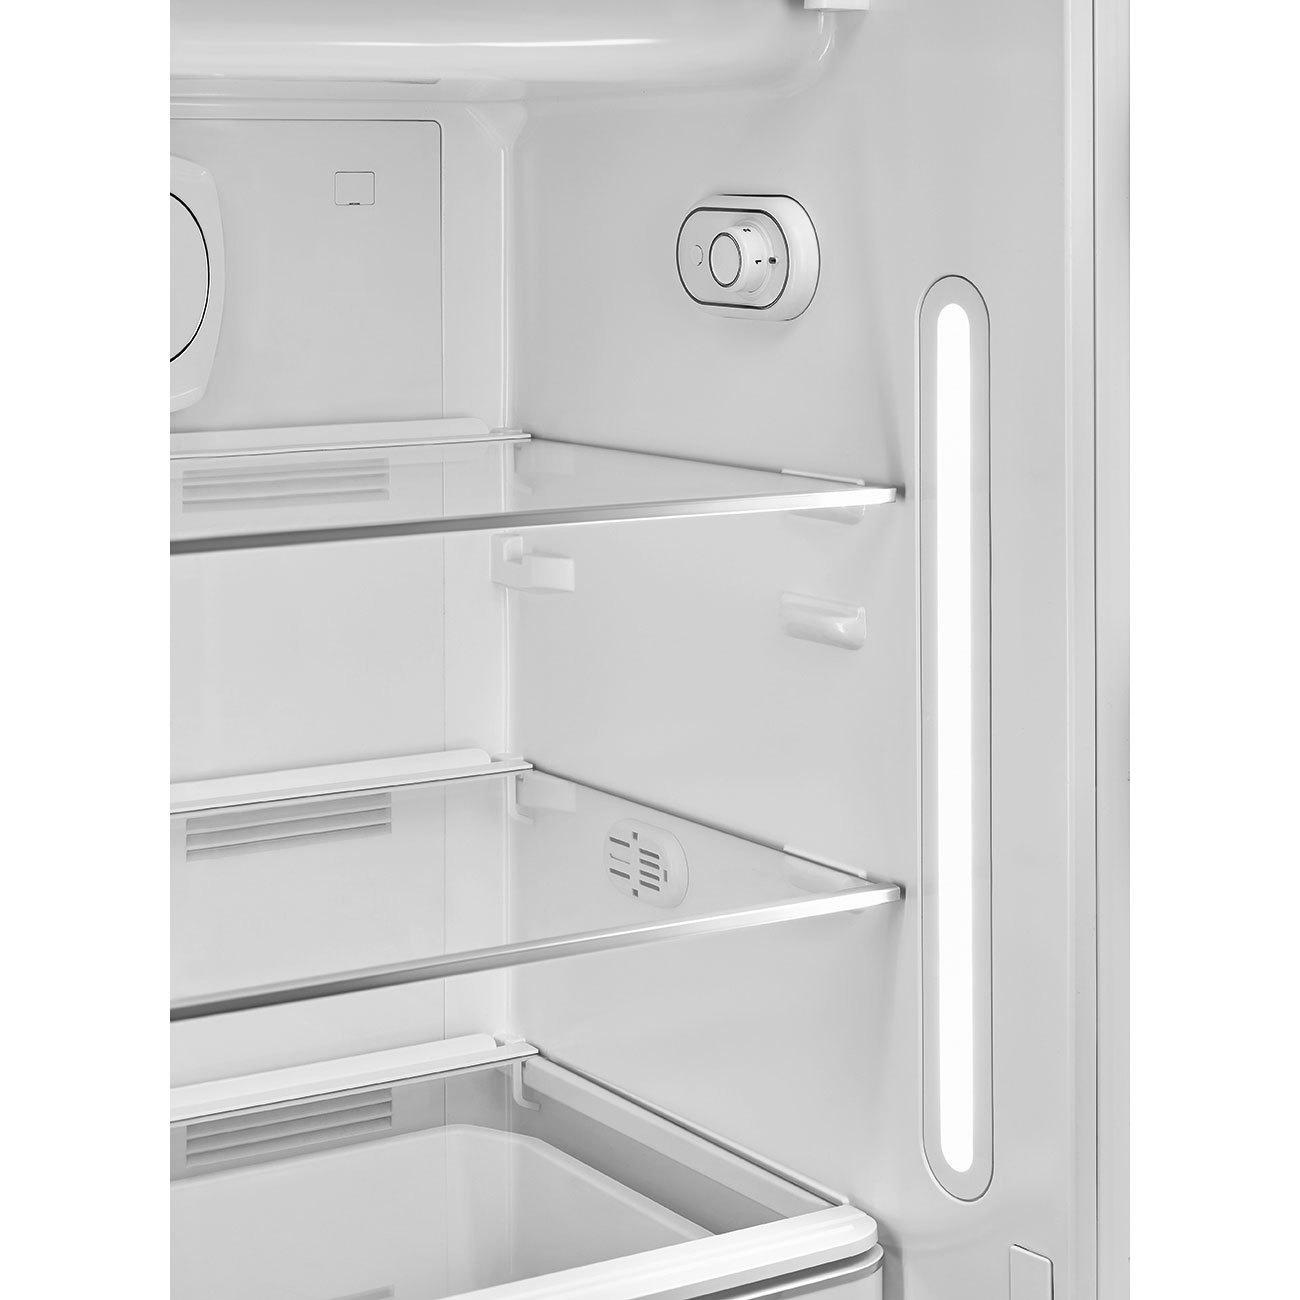 Decorated / Special refrigerator - Smeg_5